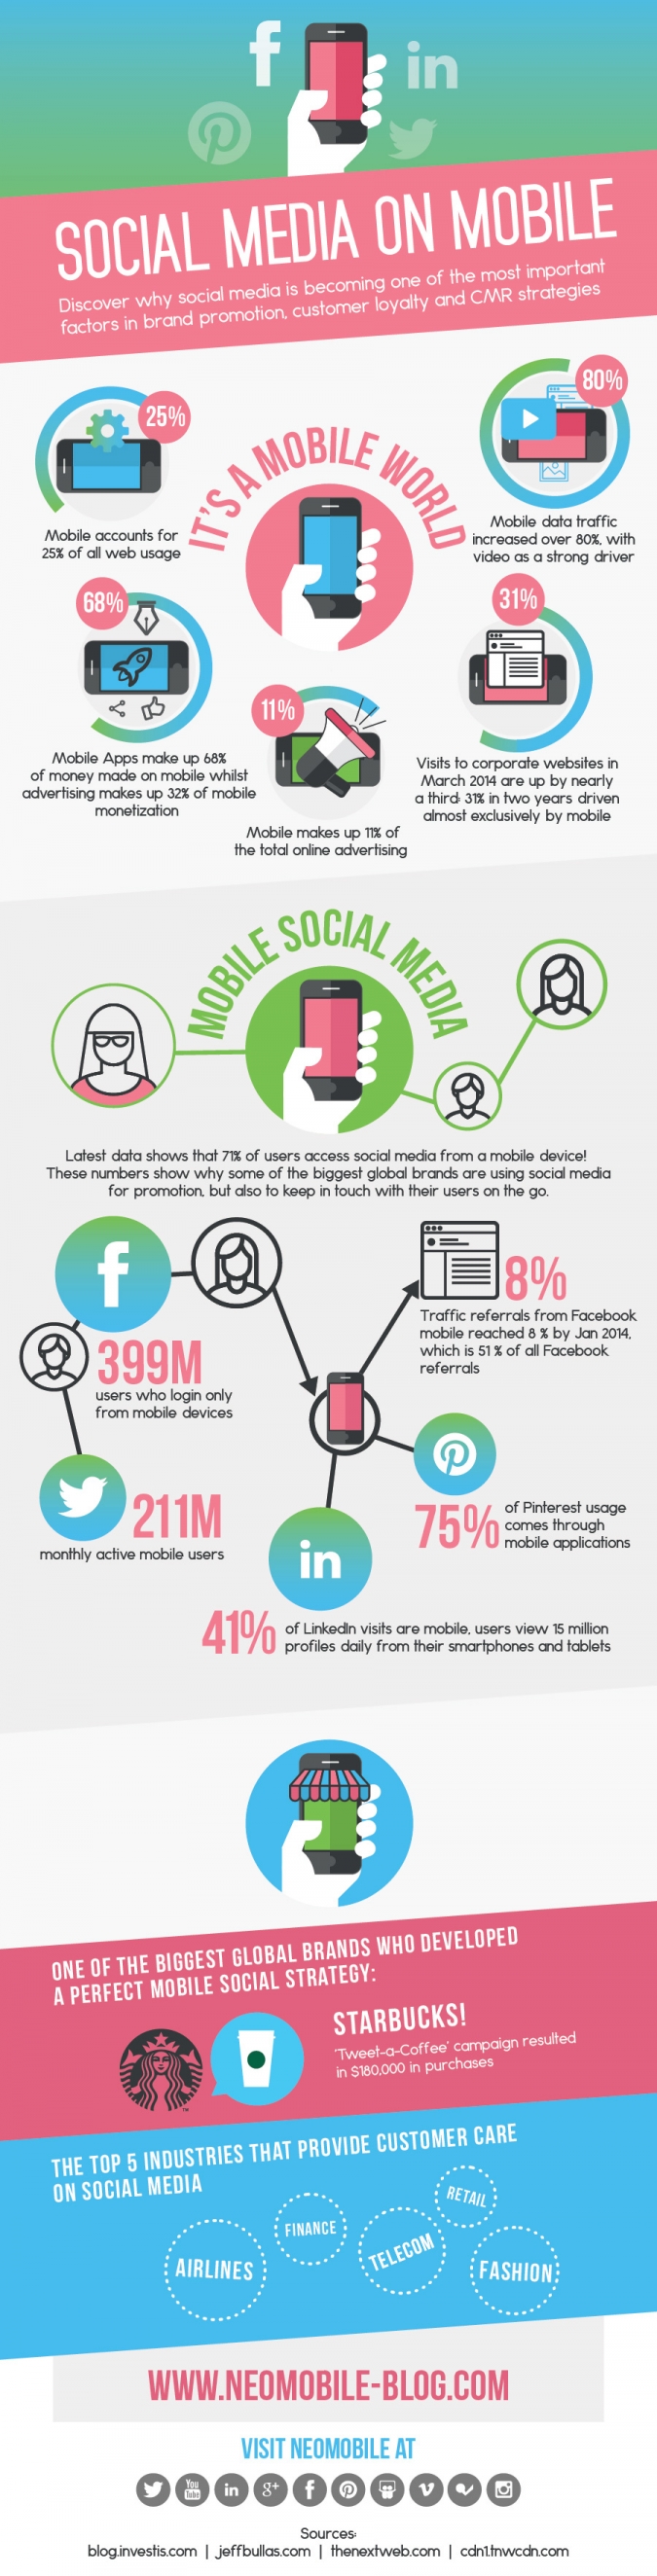 Mobile Marketing und Social Media Marketing sind auch 2016 wieder wichtige Trends! [Infografik]